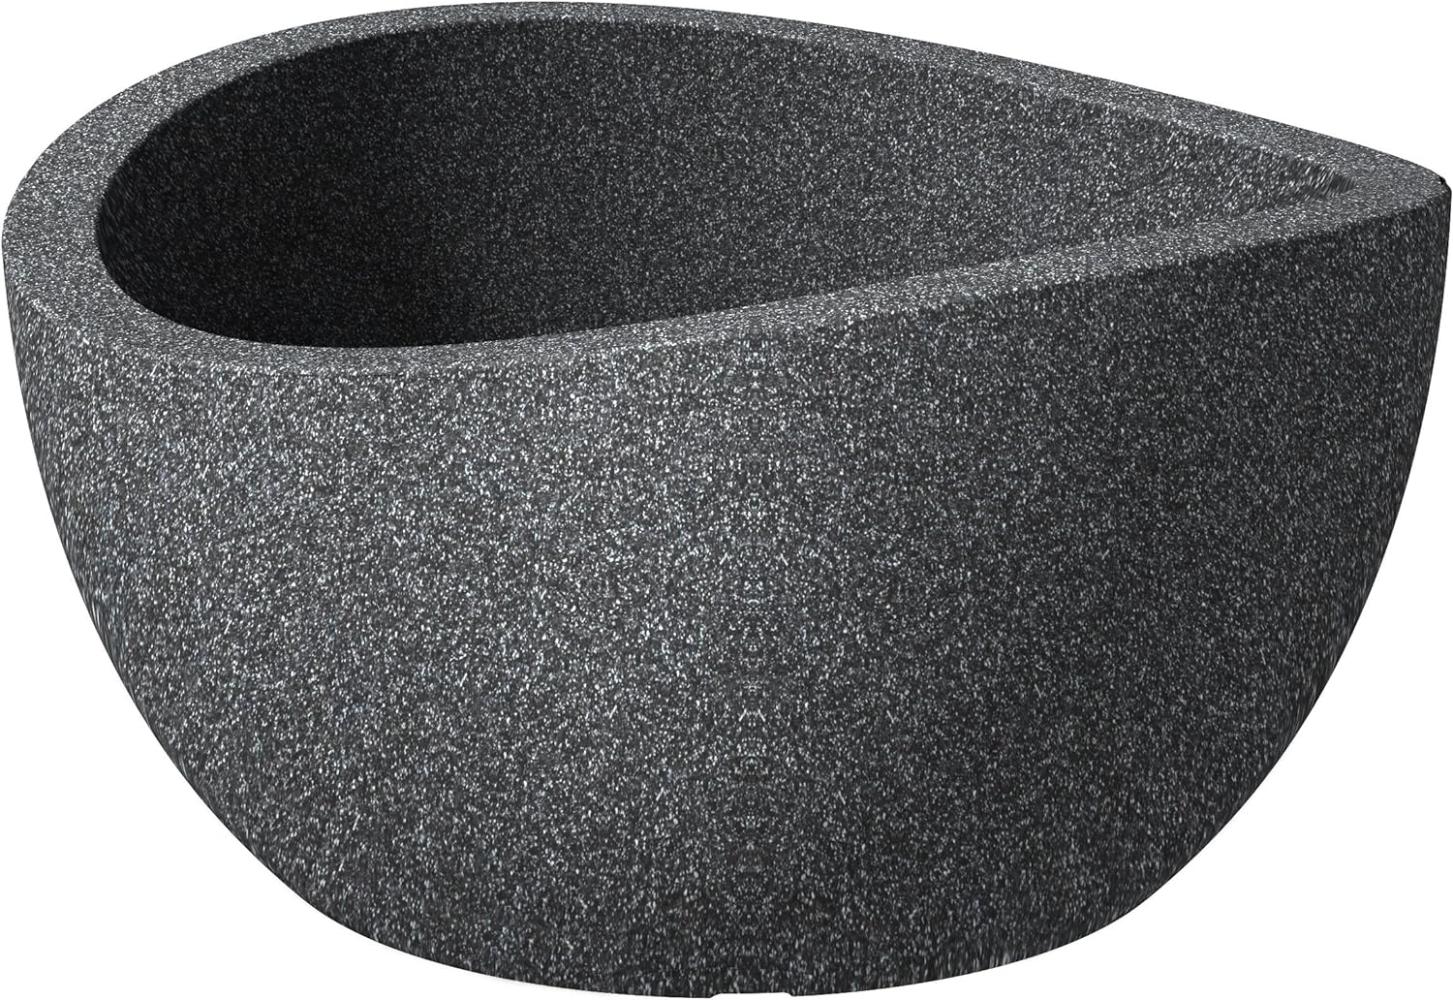 Scheurich Pflanzschale Wave Globe Bowl Serie 252 schwarz granit Ø 40 cm Bild 1